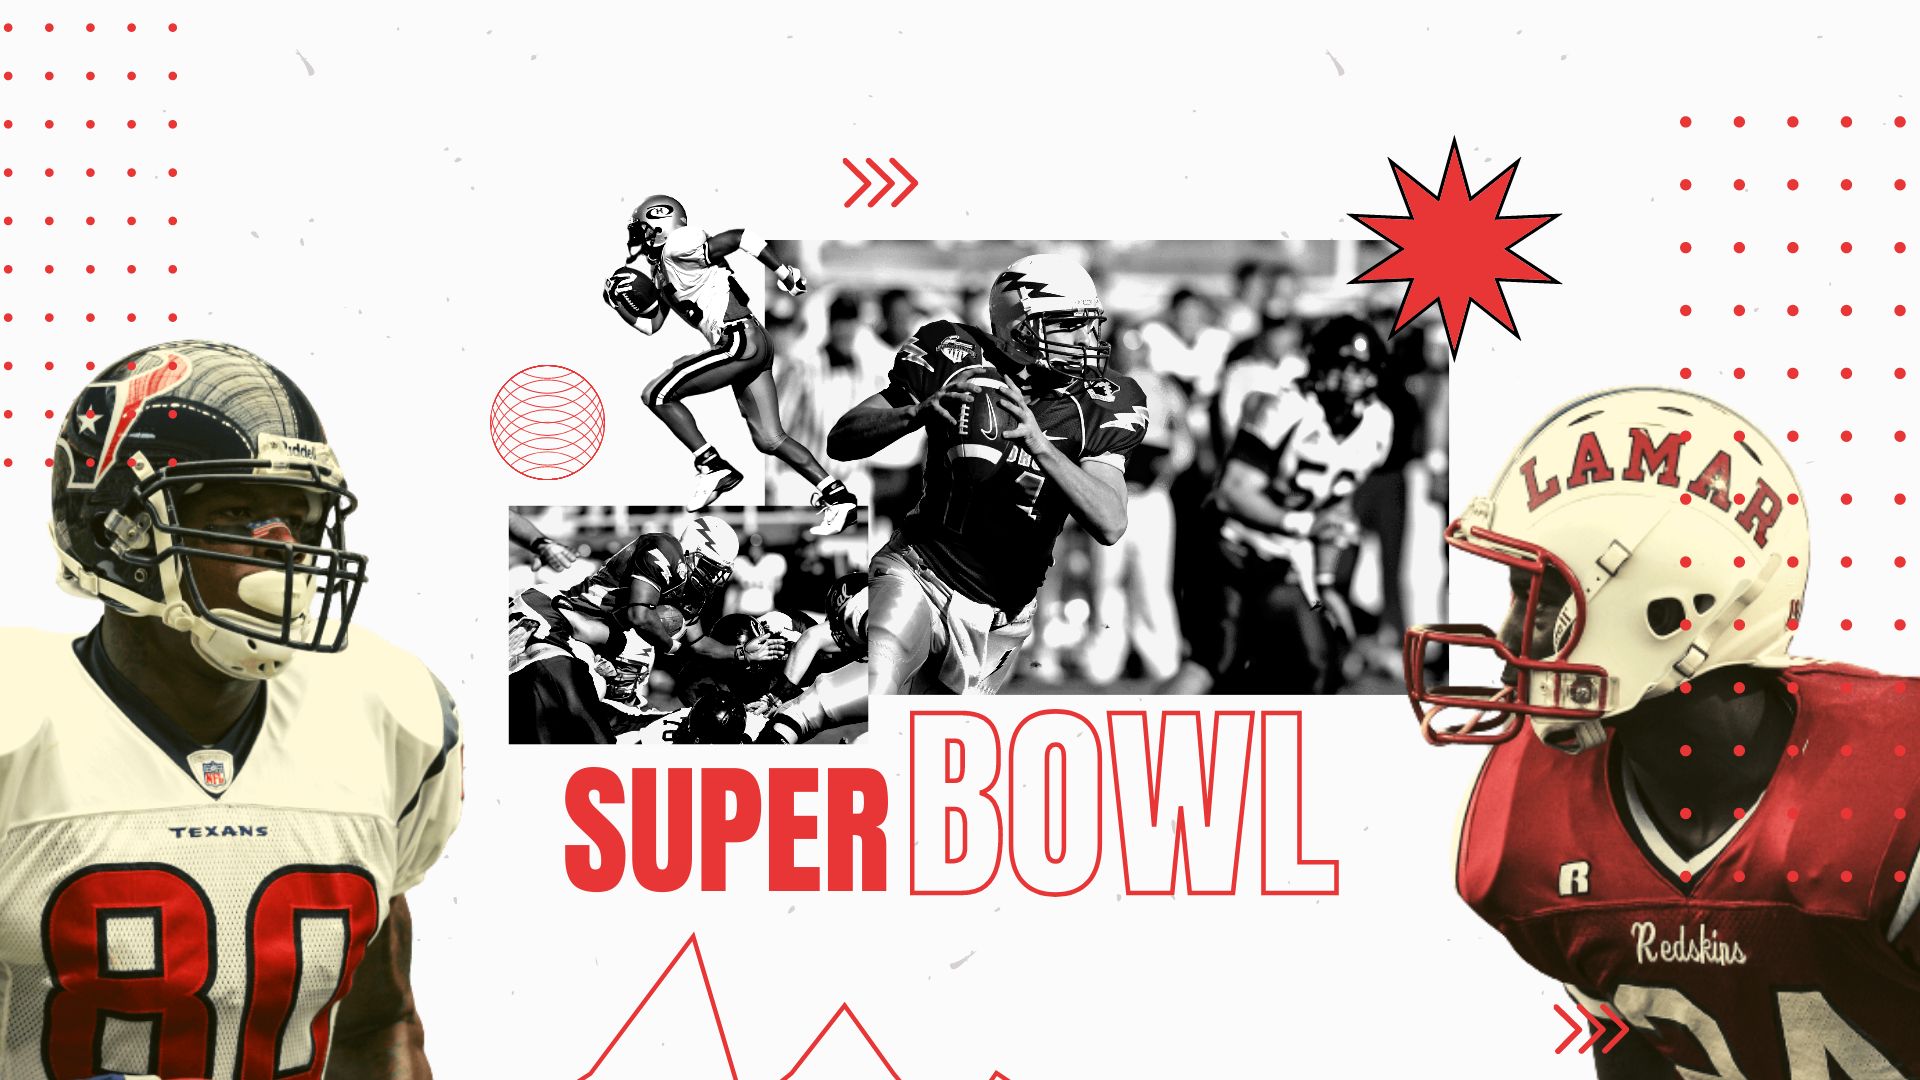 Super Bowl Design Background